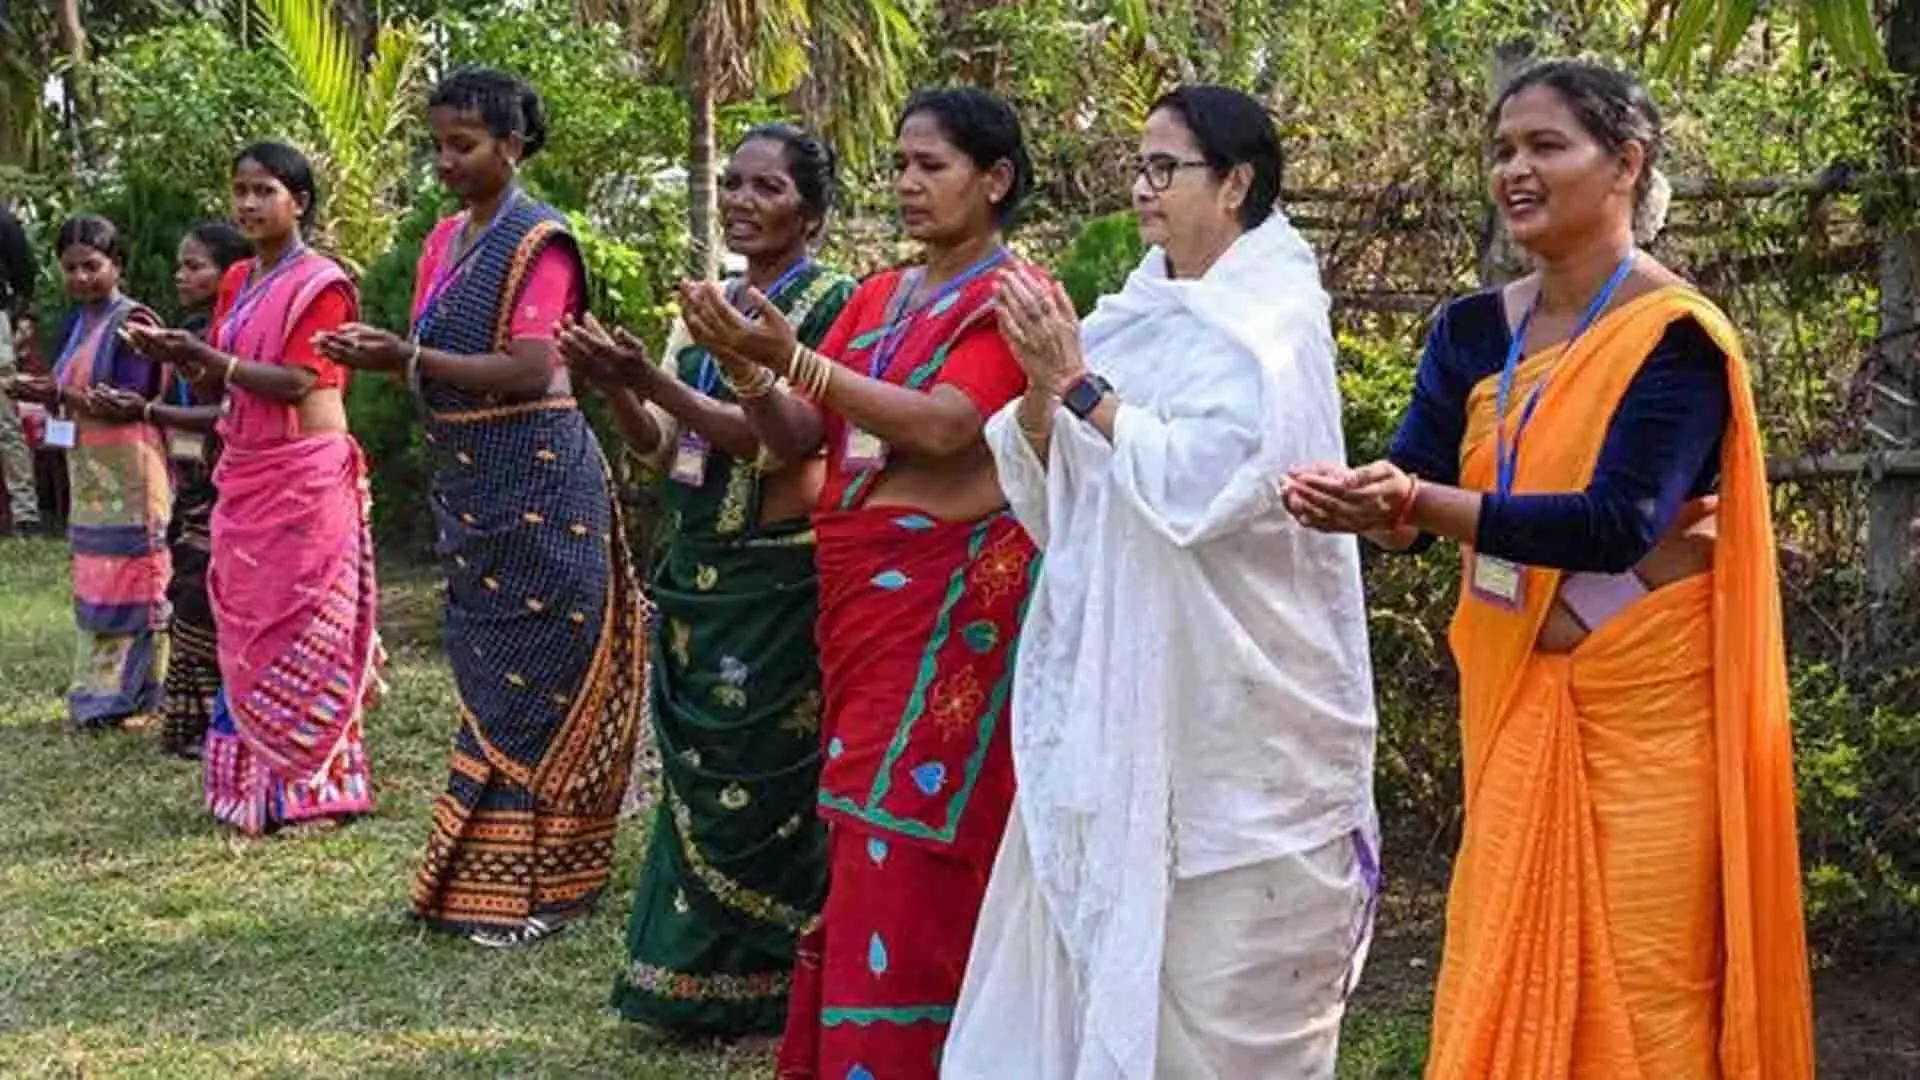 पश्चिम बंगाल की मुख्यमंत्री ममता बनर्जी ने जलपाईगुड़ी में आदिवासियों के साथ ढोल बजाया और नृत्य किया